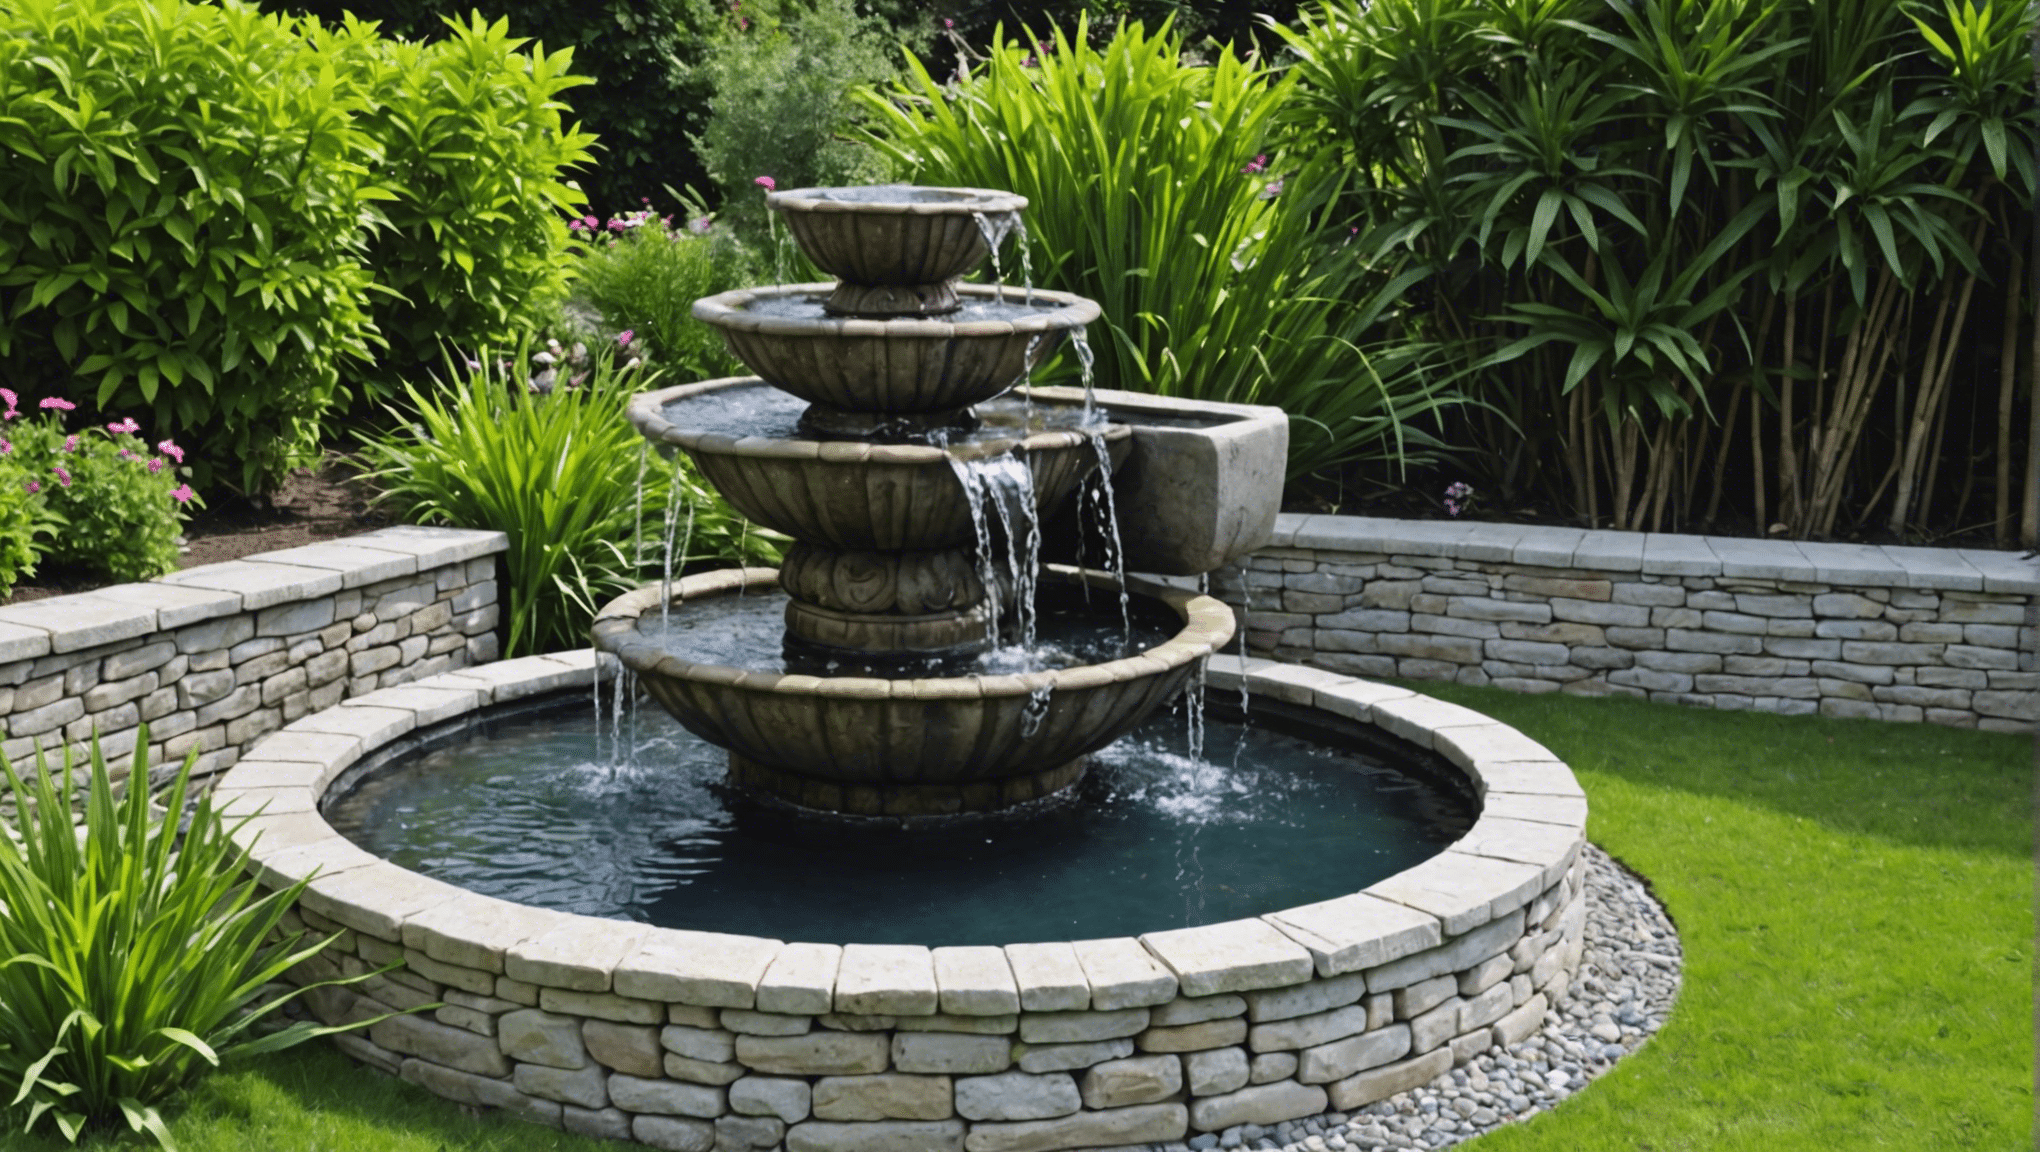 transformez votre jardin en oasis de relaxation grâce à notre guide pratique pour installer une fontaine en 5 étapes faciles ! découvrez tous nos conseils pour créer un espace de détente unique.